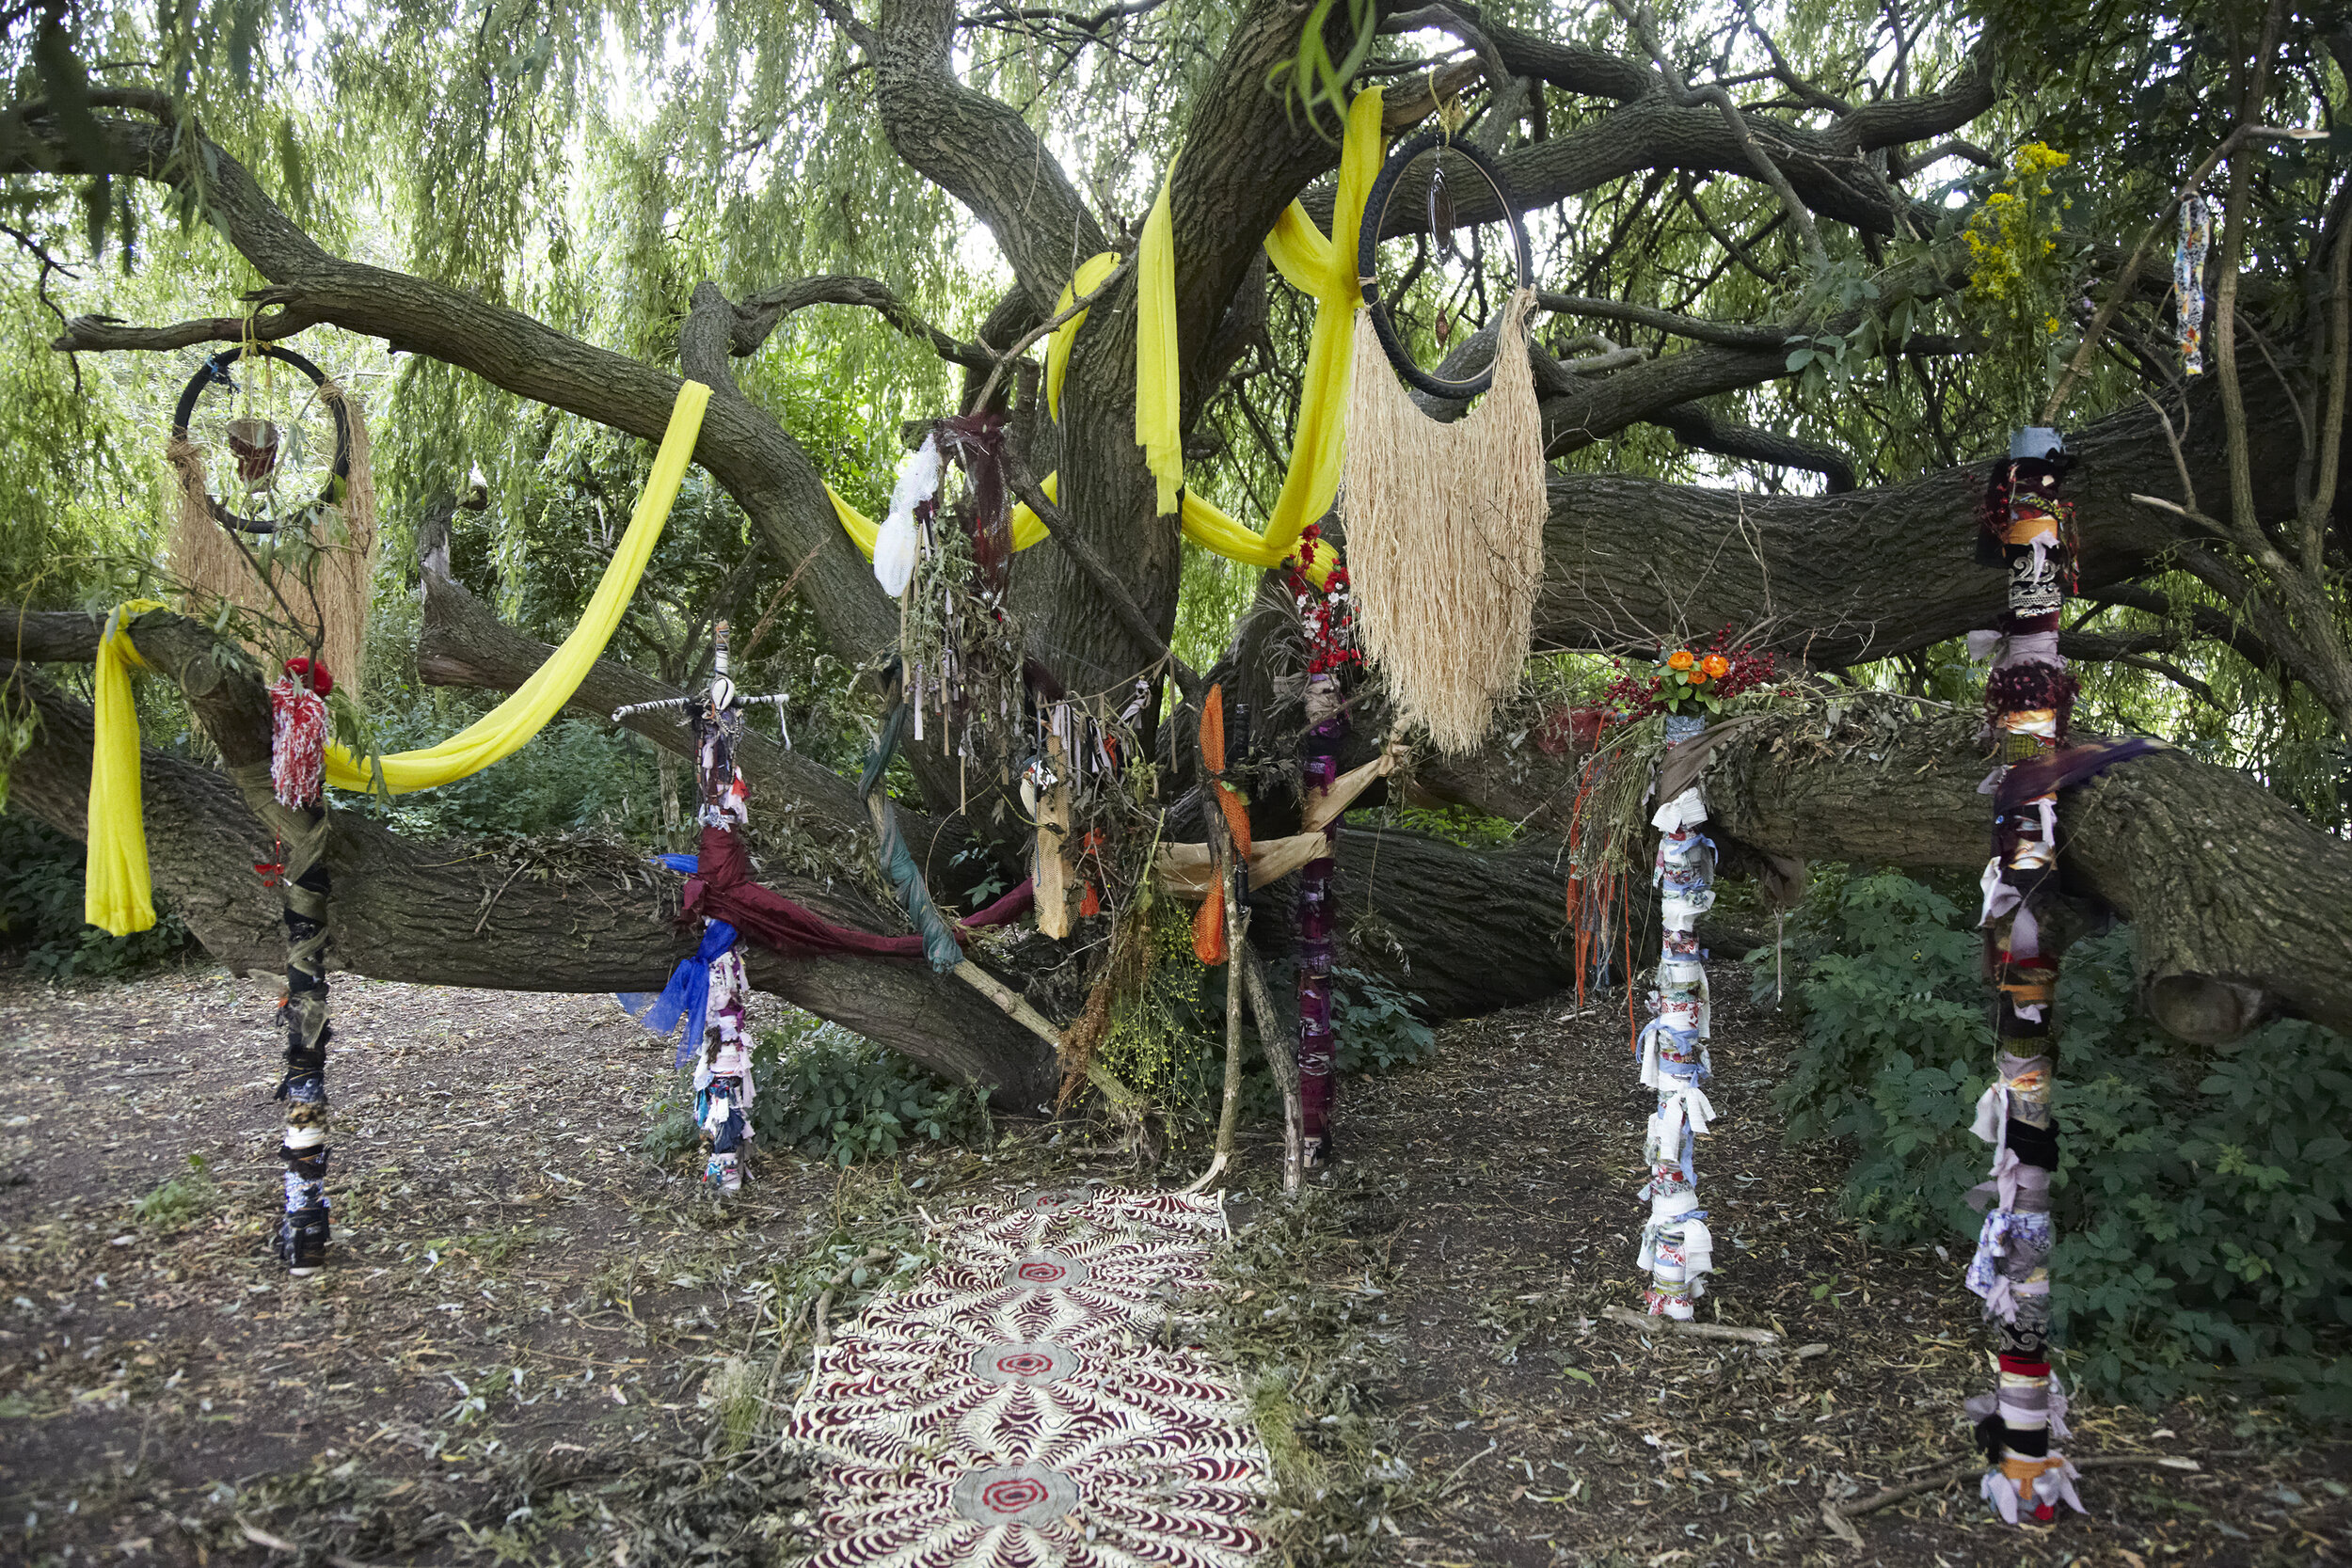 Camilla Mason Totam sculptures Tottenham Marsh 2016.jpg